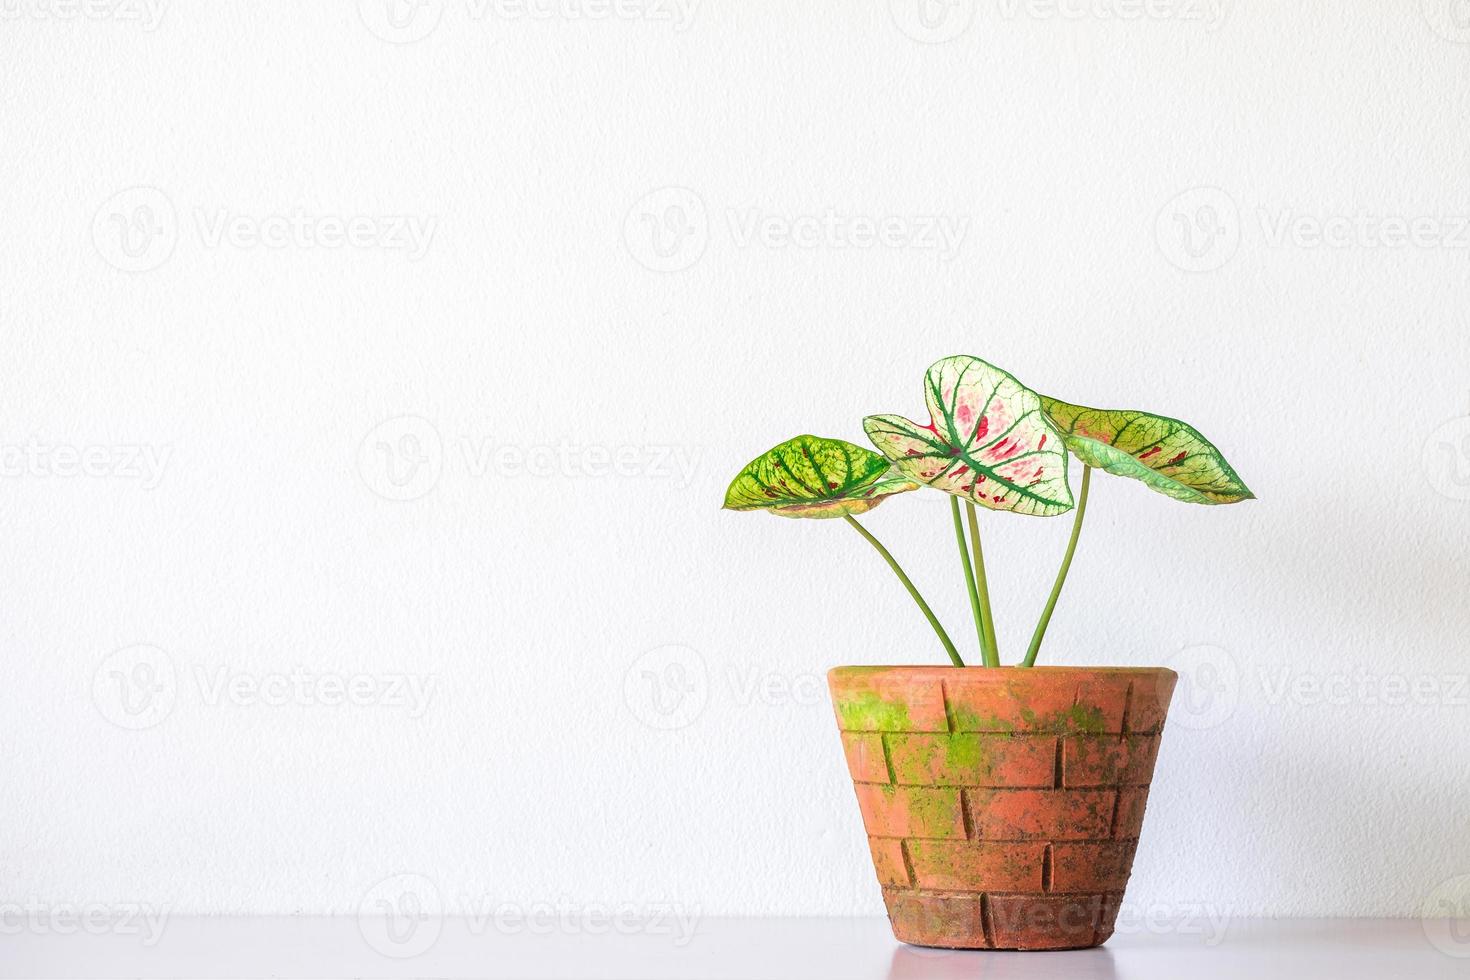 Caladium-Pflanze im orangefarbenen Tontopf isoliert auf weißem Hintergrund. caladium grüne blätter luftreiniger pflanze drinnen, wohnzimmer foto